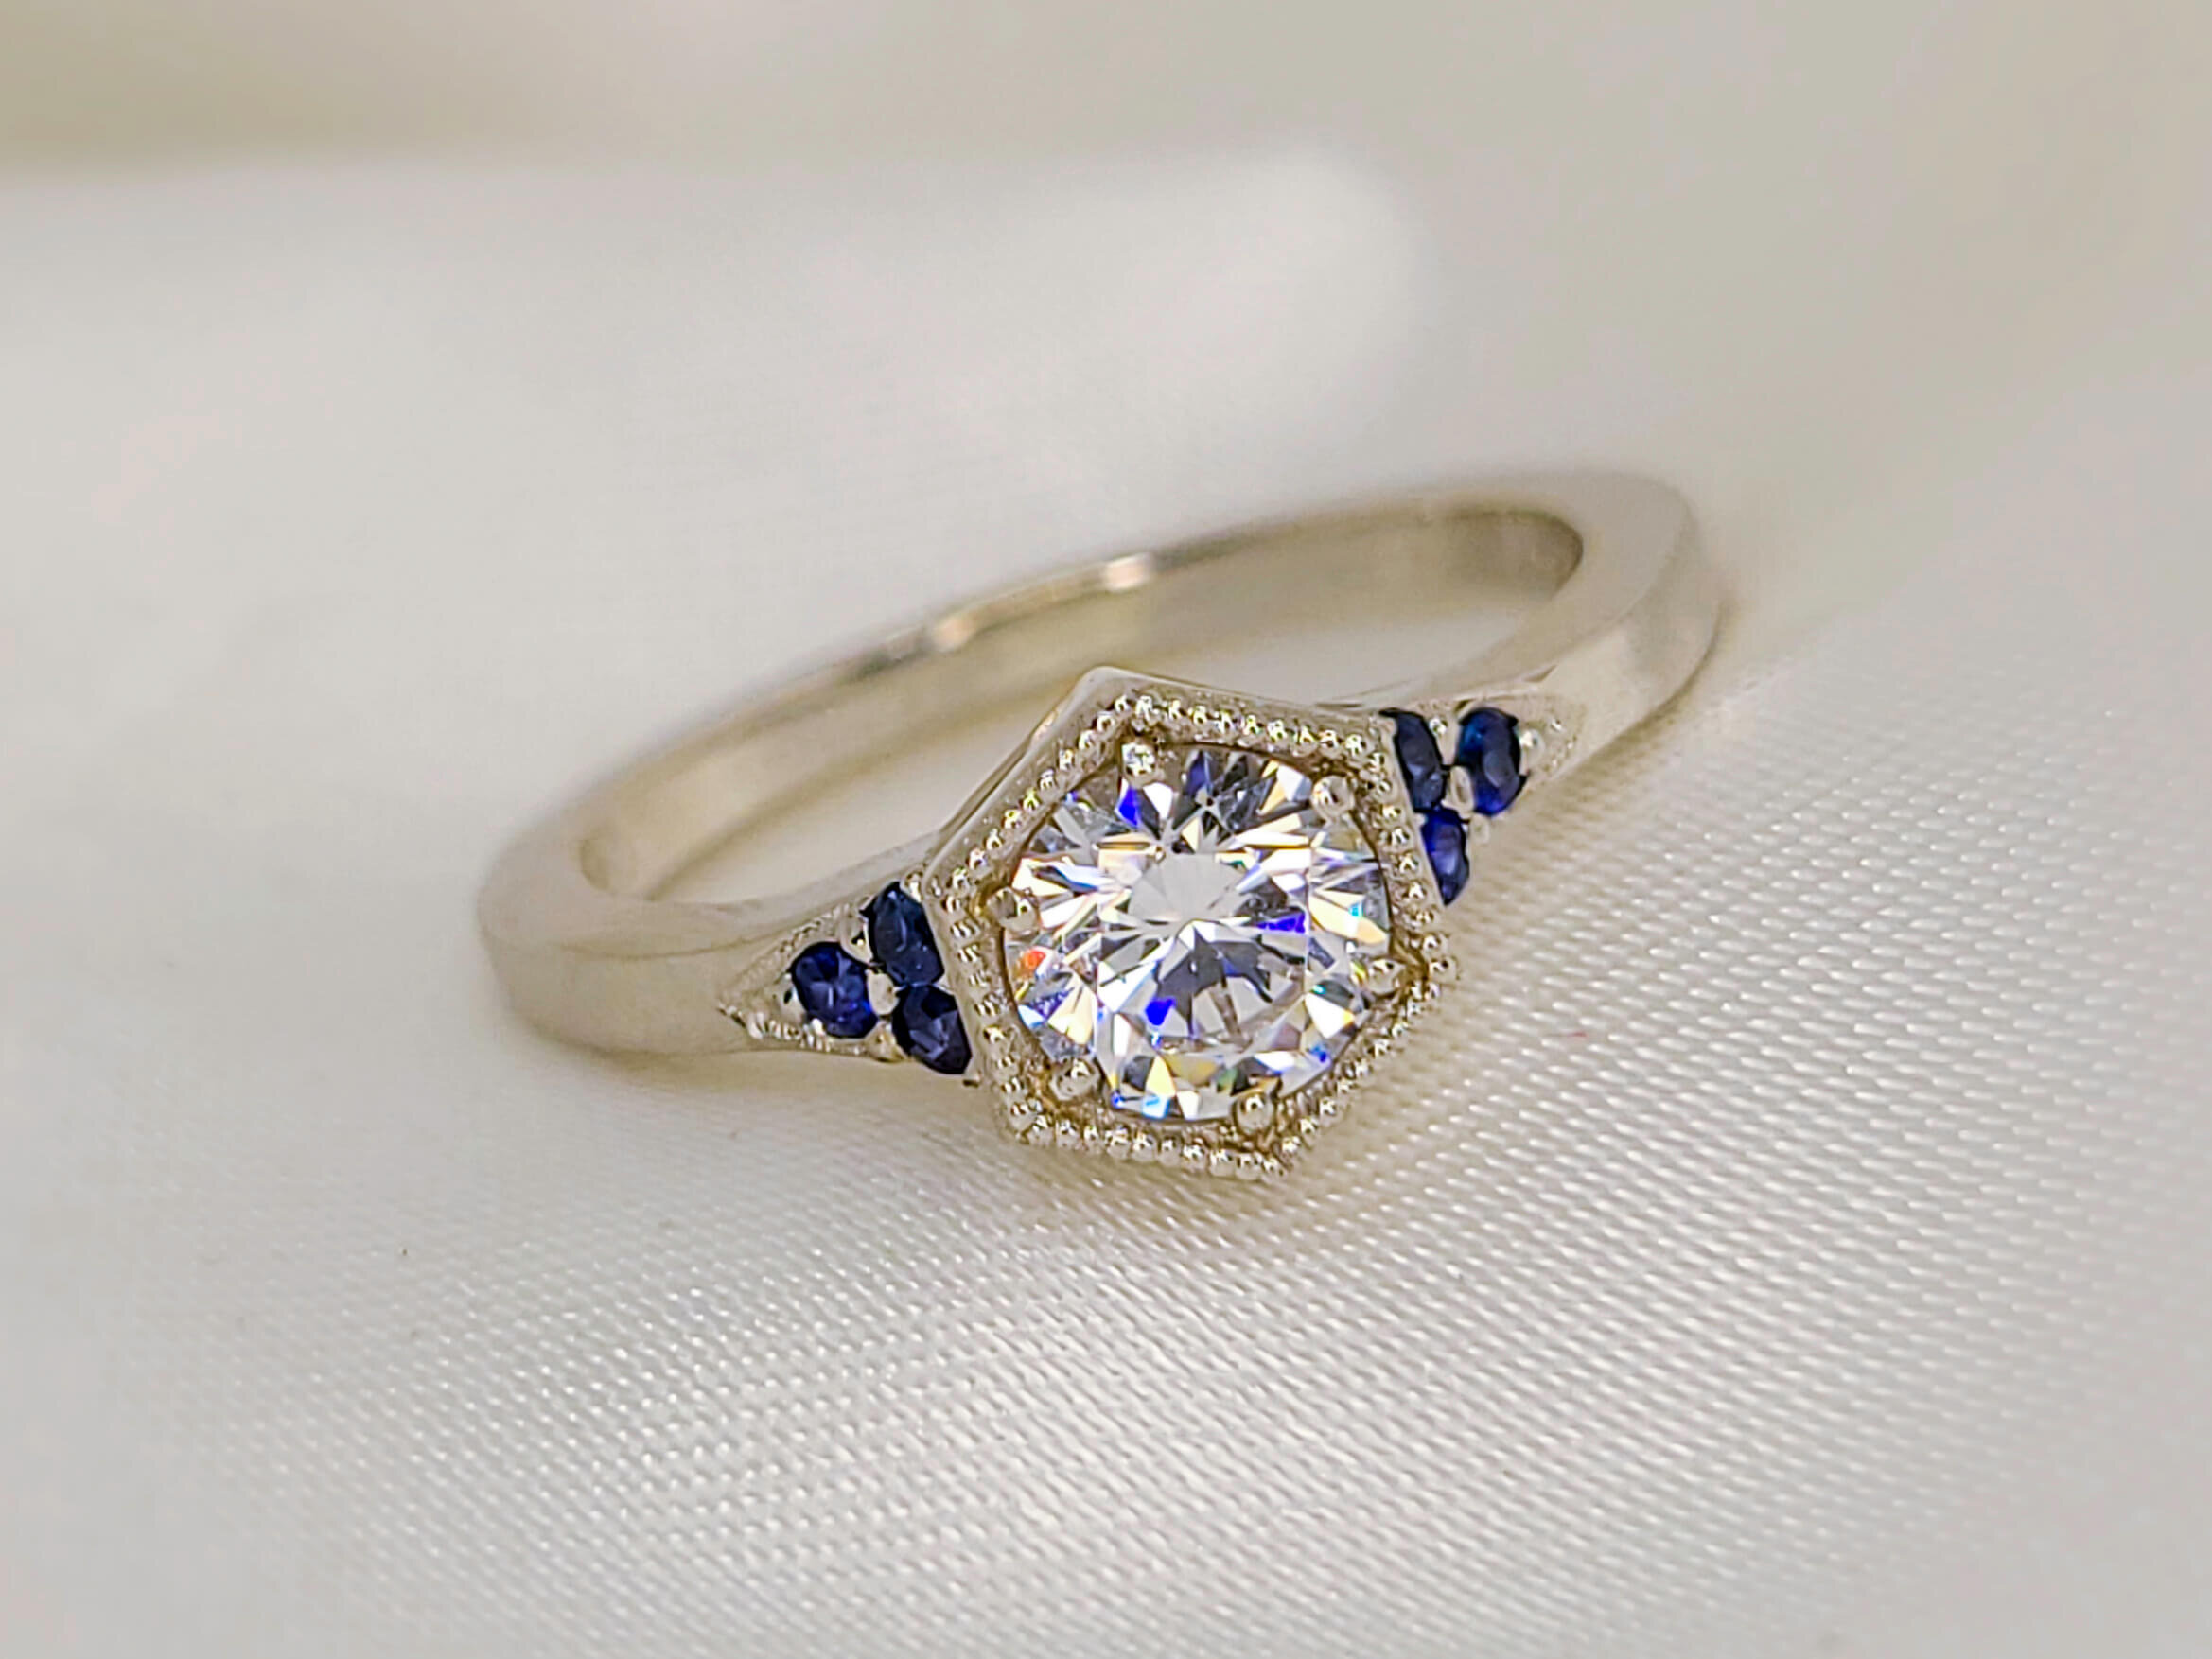 Gemstone engagement rings - Blue sapphire | Steven Stone